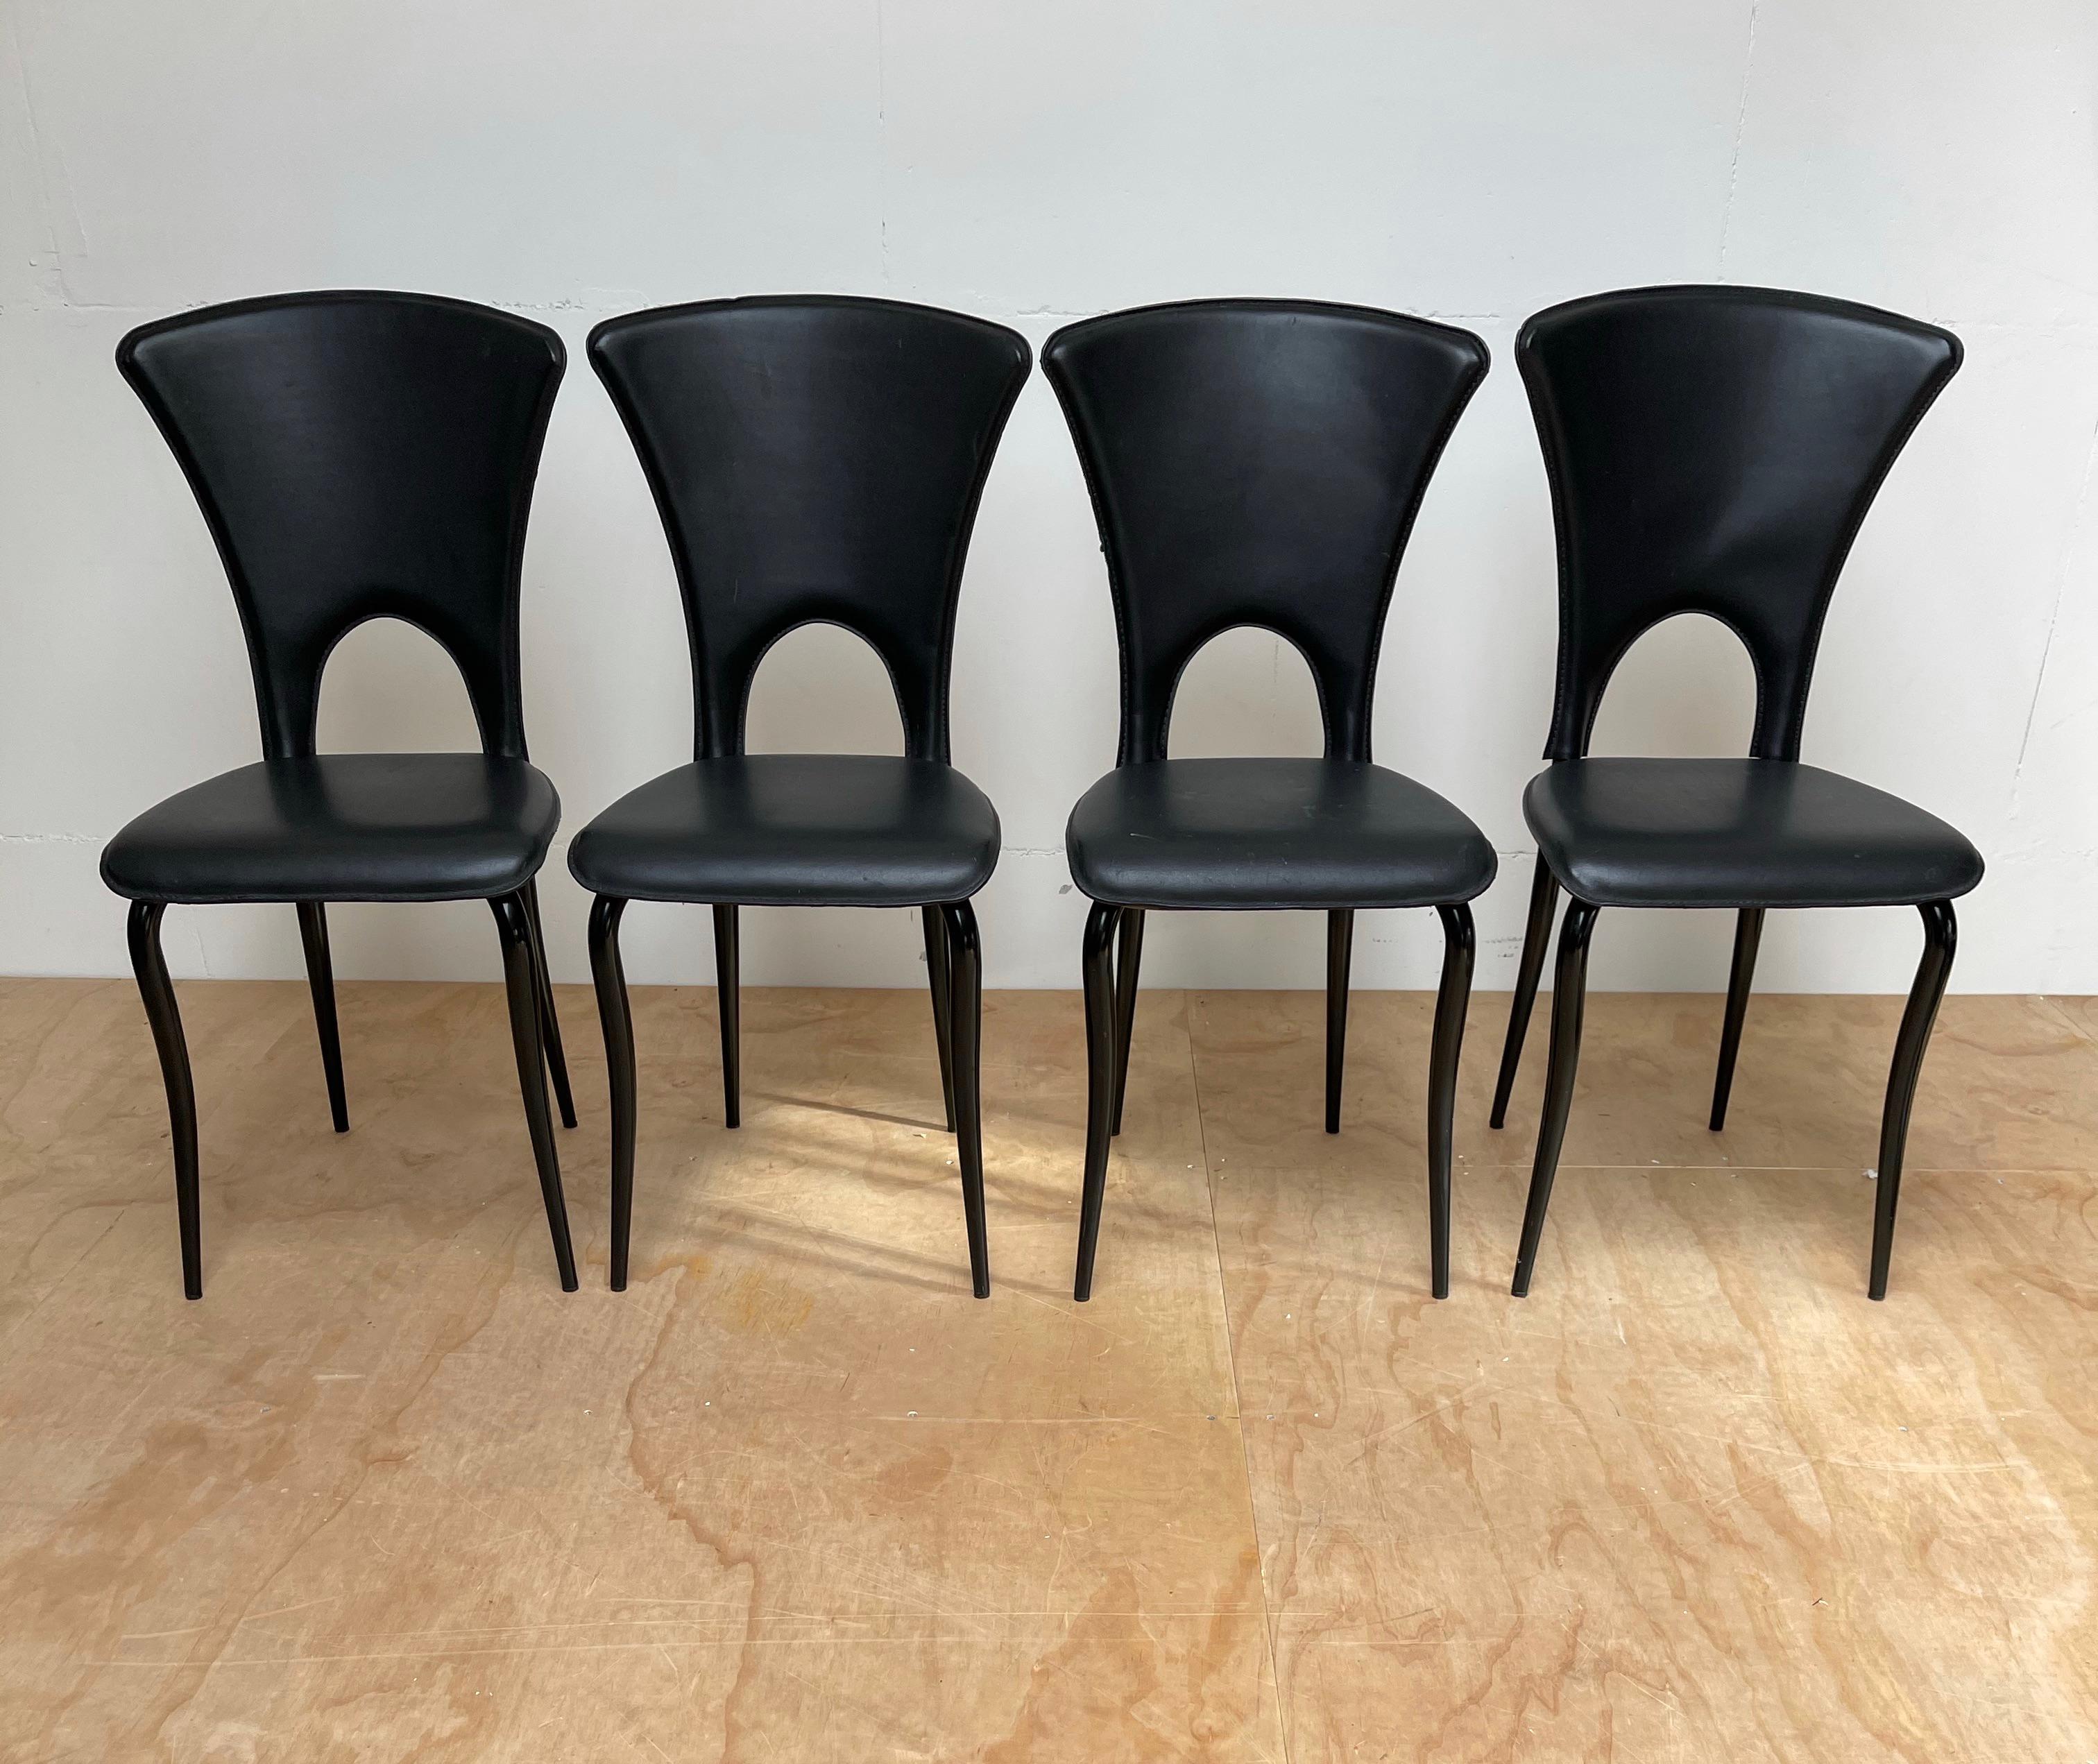 Rare ensemble de quatre chaises de salle à manger de style, tout à fait original.

Ce magnifique ensemble de chaises très élégantes est une autre de nos récentes trouvailles. Les lignes fluides du design combinées aux matériaux font que cet